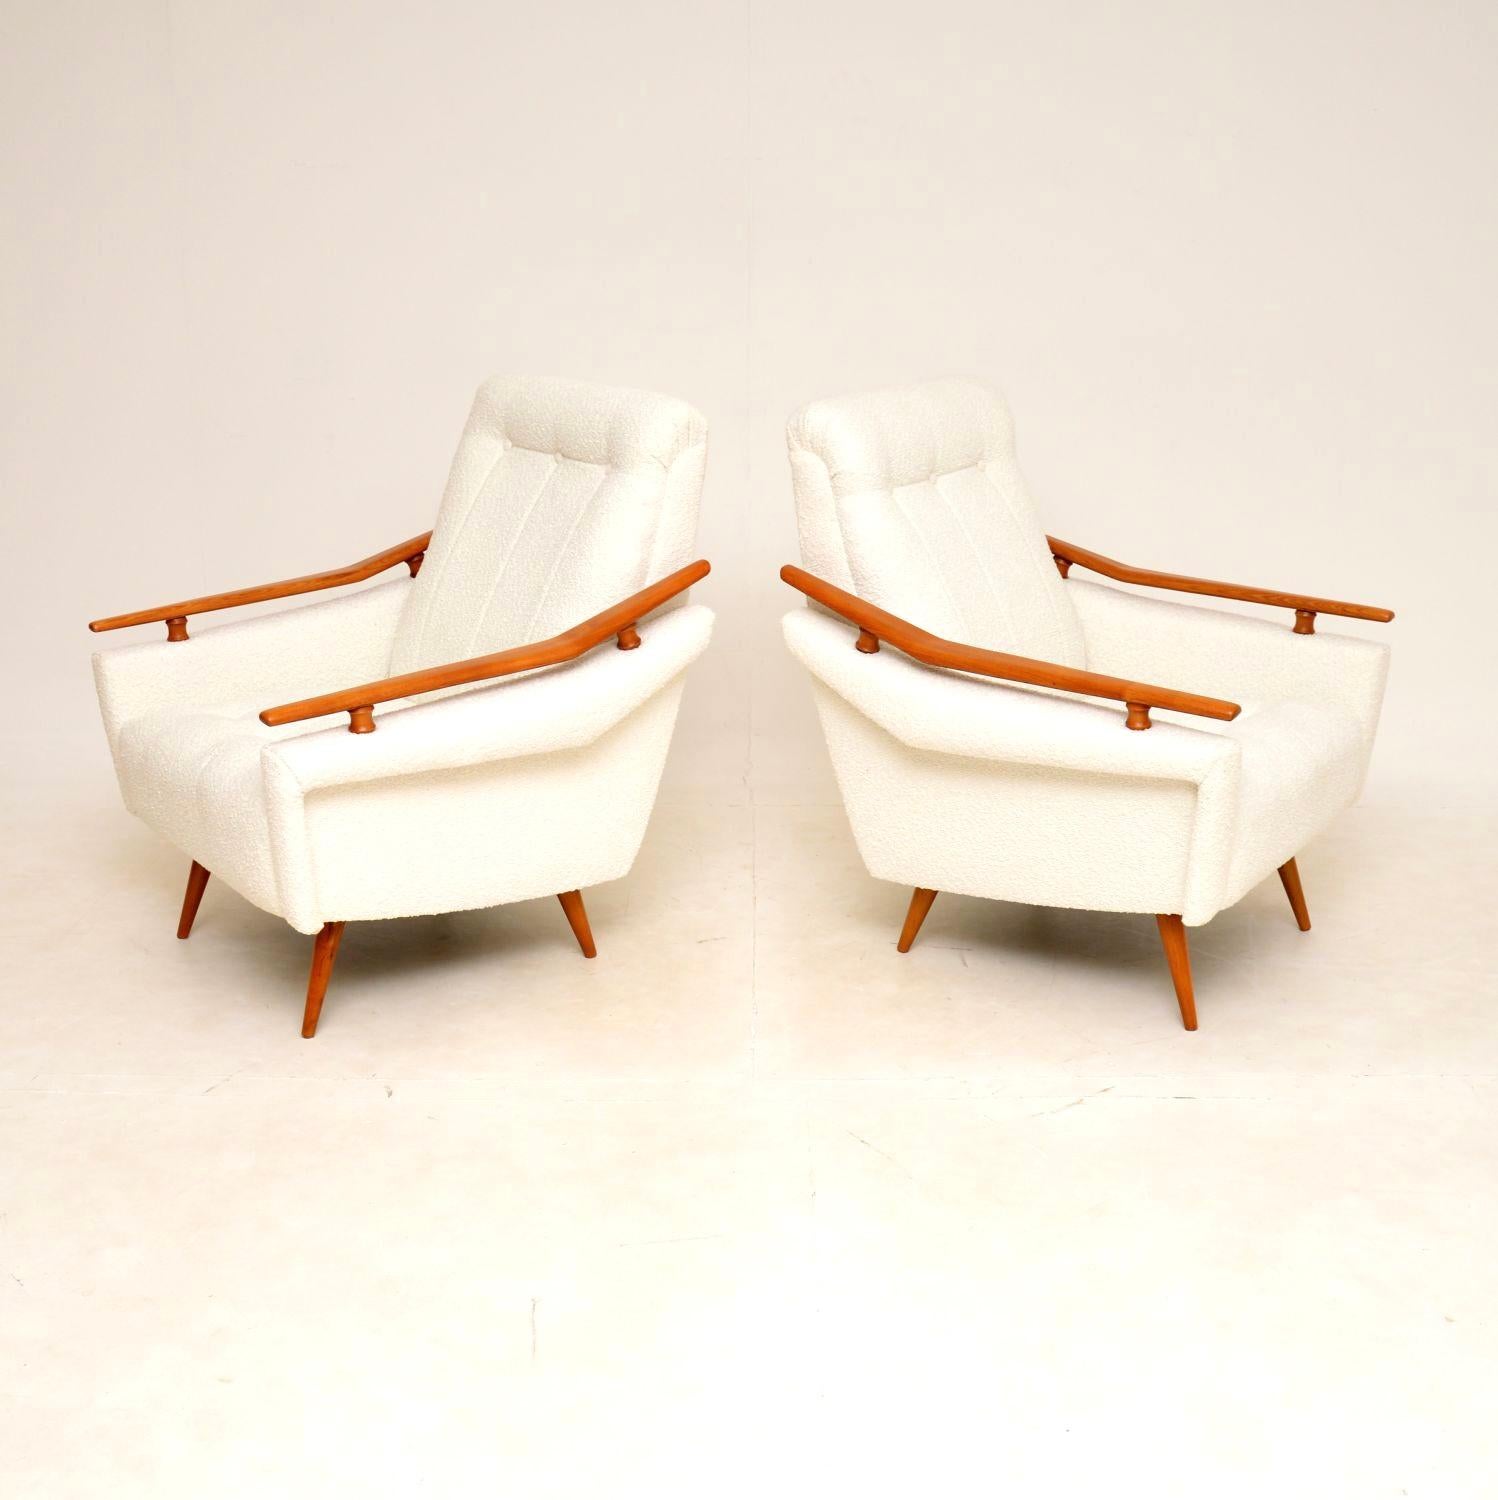 Une superbe et très confortable paire de fauteuils français vintage, datant des années 1960.

La qualité est exceptionnelle, ils sont magnifiquement réalisés avec des bras et des pieds en orme massif. Les sièges et les dossiers sont bien paddés et